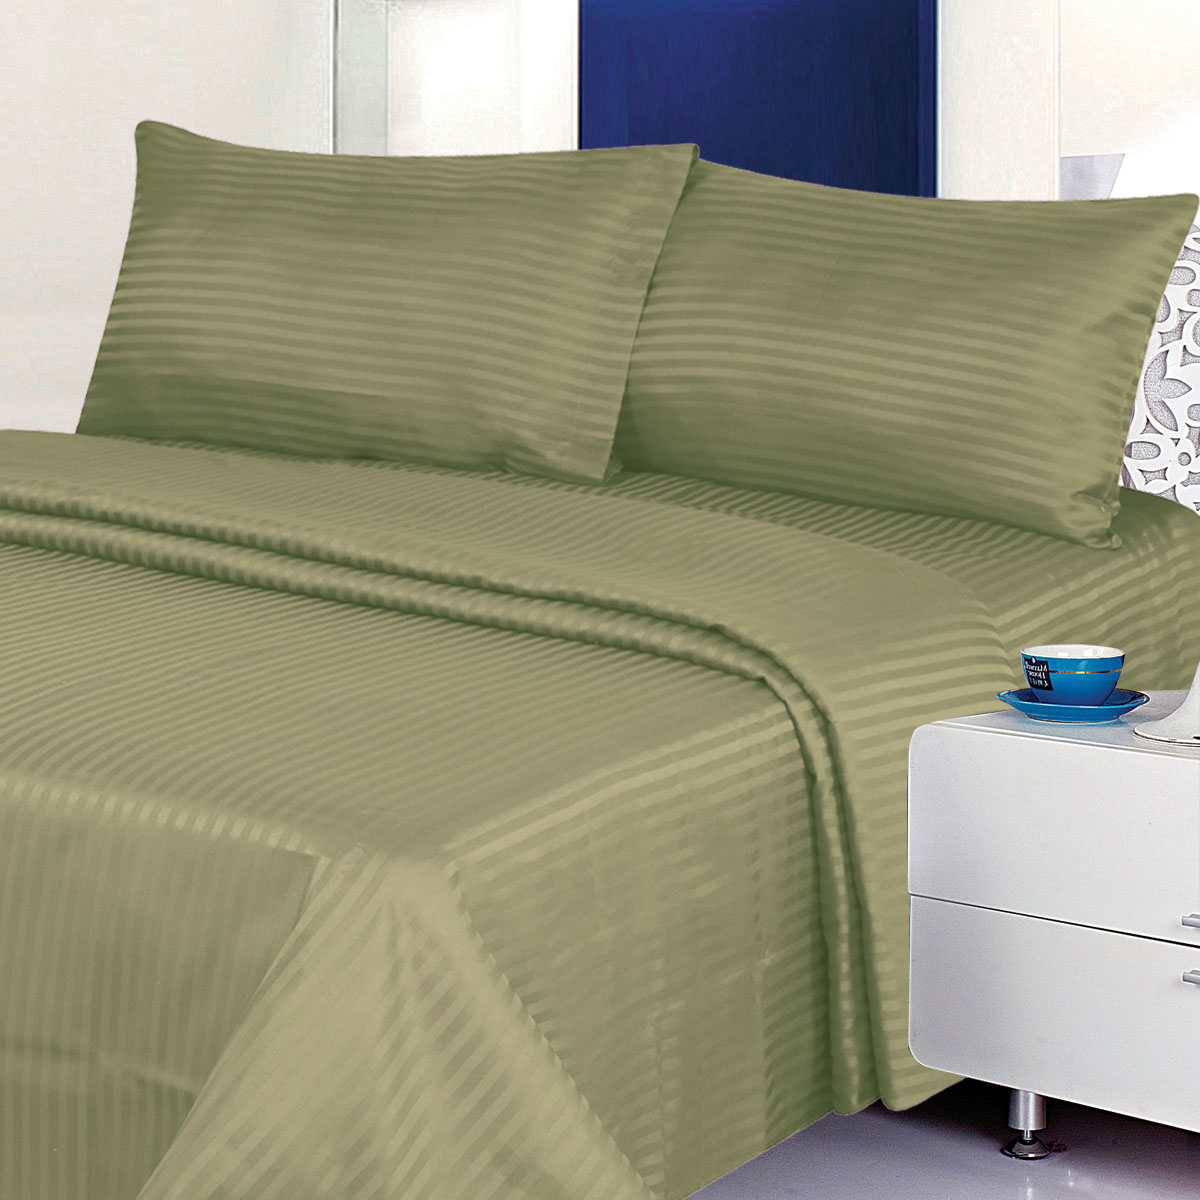 Deluxe 6PC Classic Cotton-Blend Sateen Dobby Stripe Bed Sheet Set - Full, Light Blue